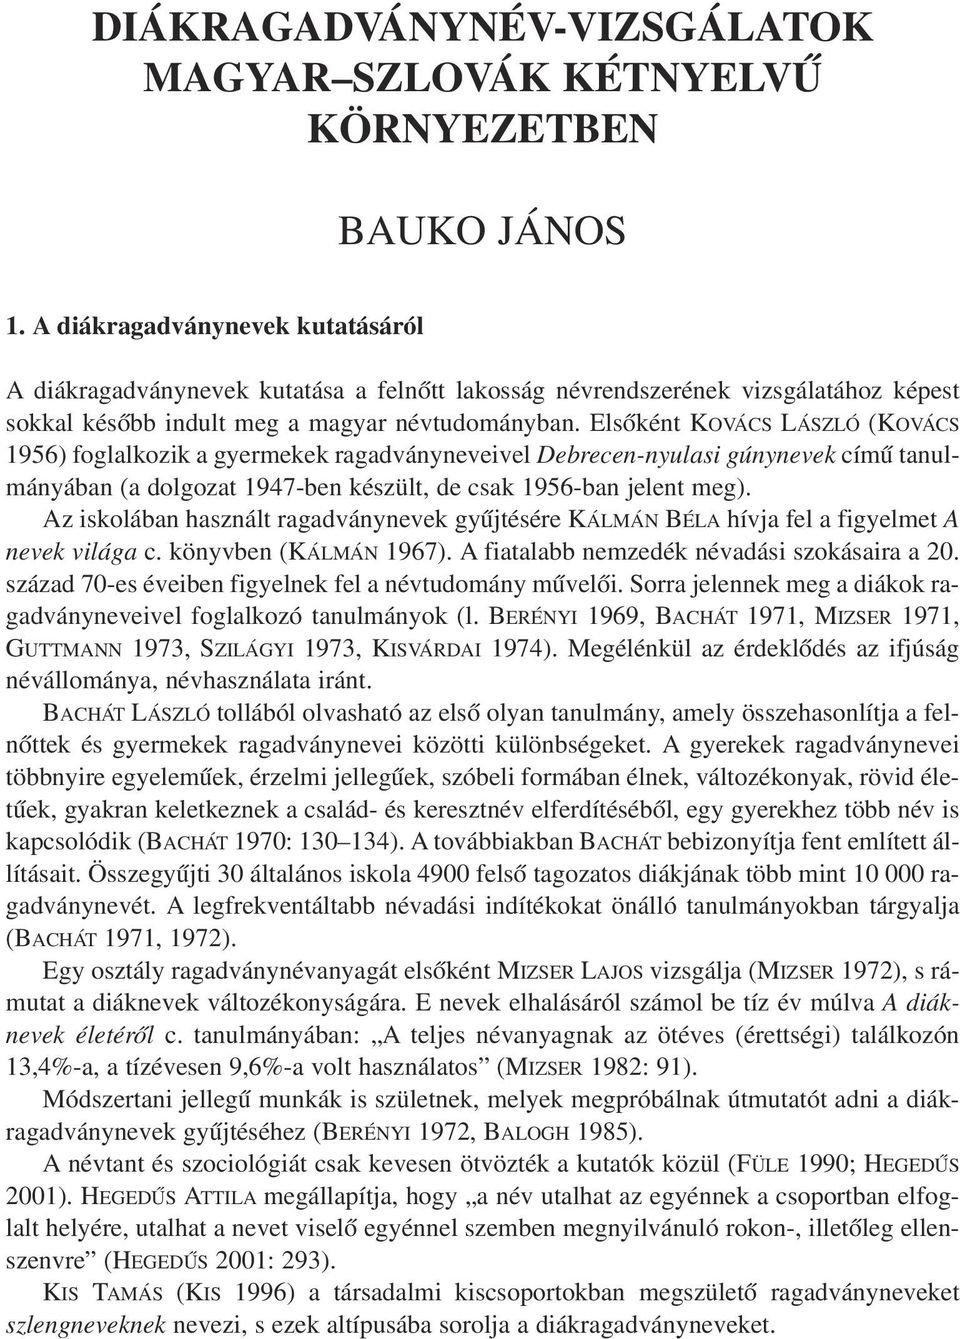 Elsõként KOVÁCS LÁSZLÓ (KOVÁCS 1956) foglalkozik a gyermekek ragadványneveivel Debrecen-nyulasi gúnynevek címû tanulmányában (a dolgozat 1947-ben készült, de csak 1956-ban jelent meg).